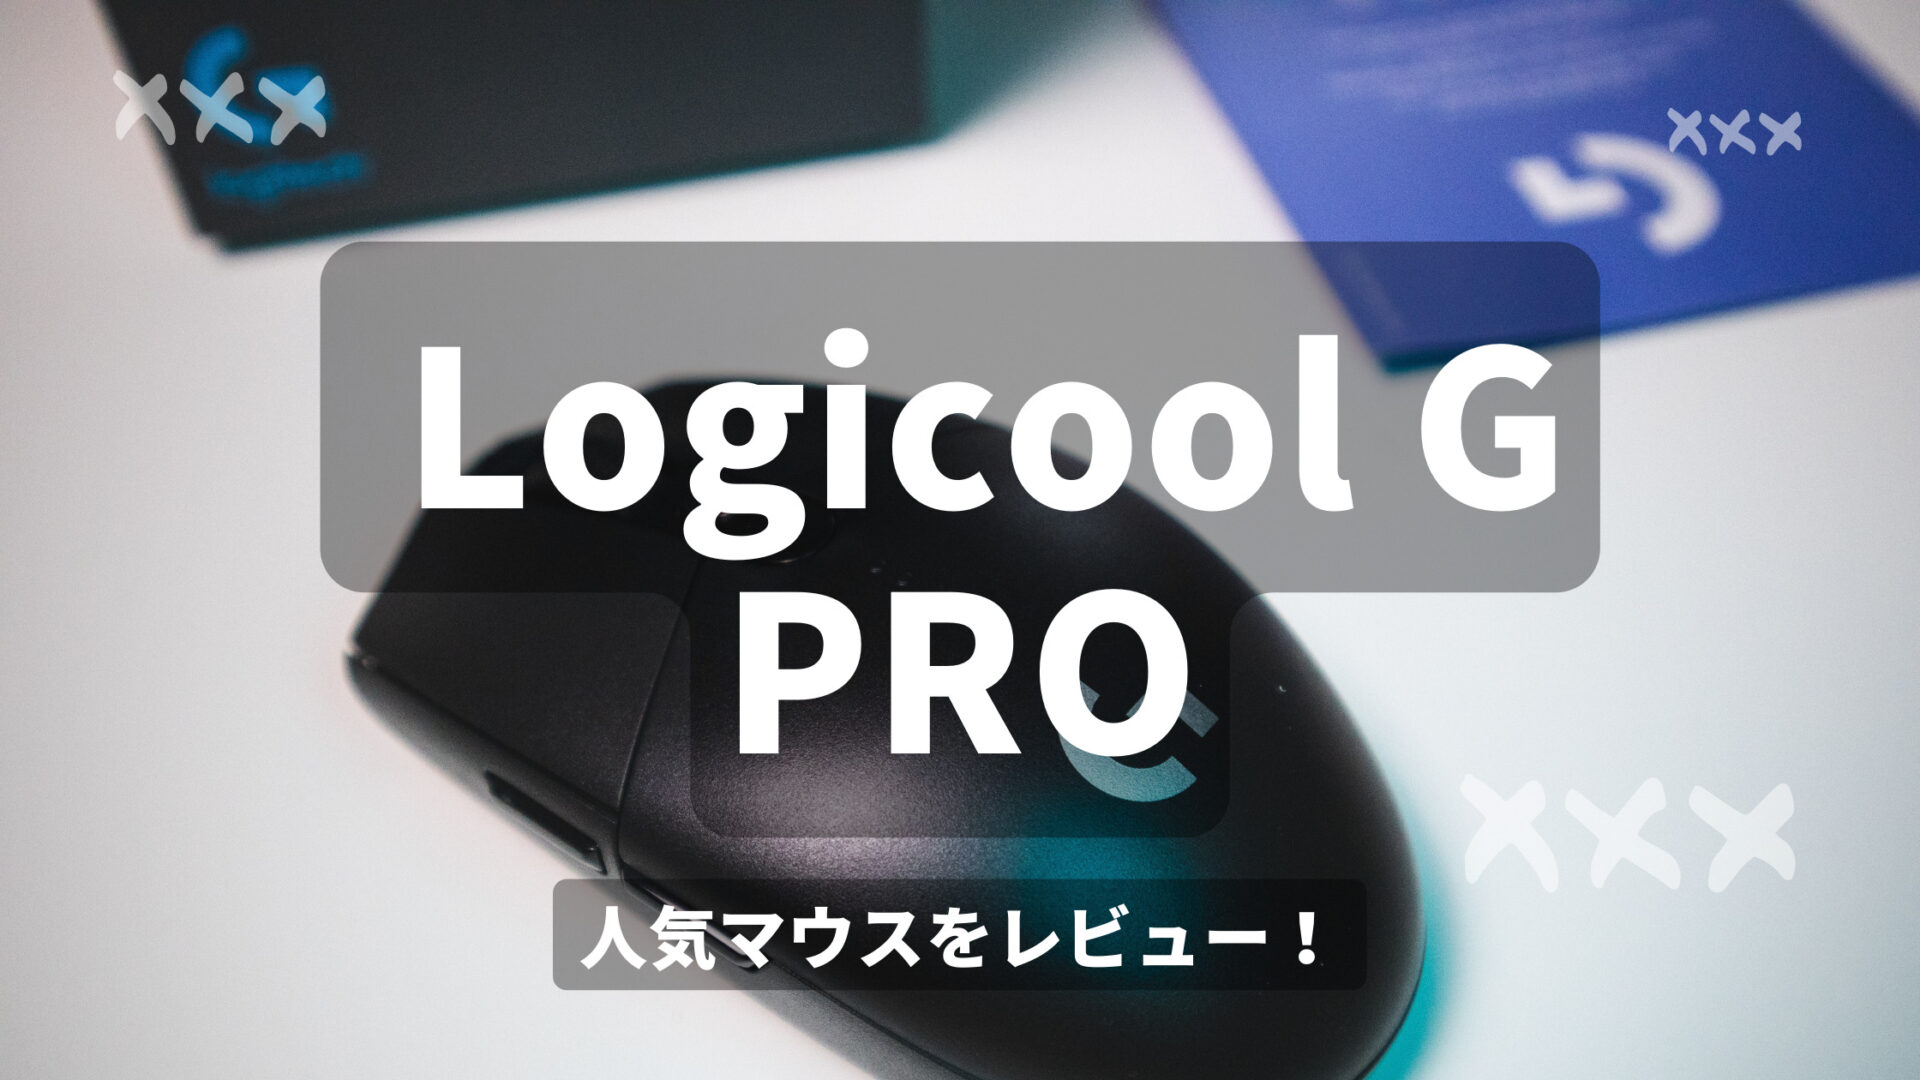 Logicool G Pro をレビュー 超軽量で両手利き対応なので誰でも使いやすいワイヤレスゲーミングマウス